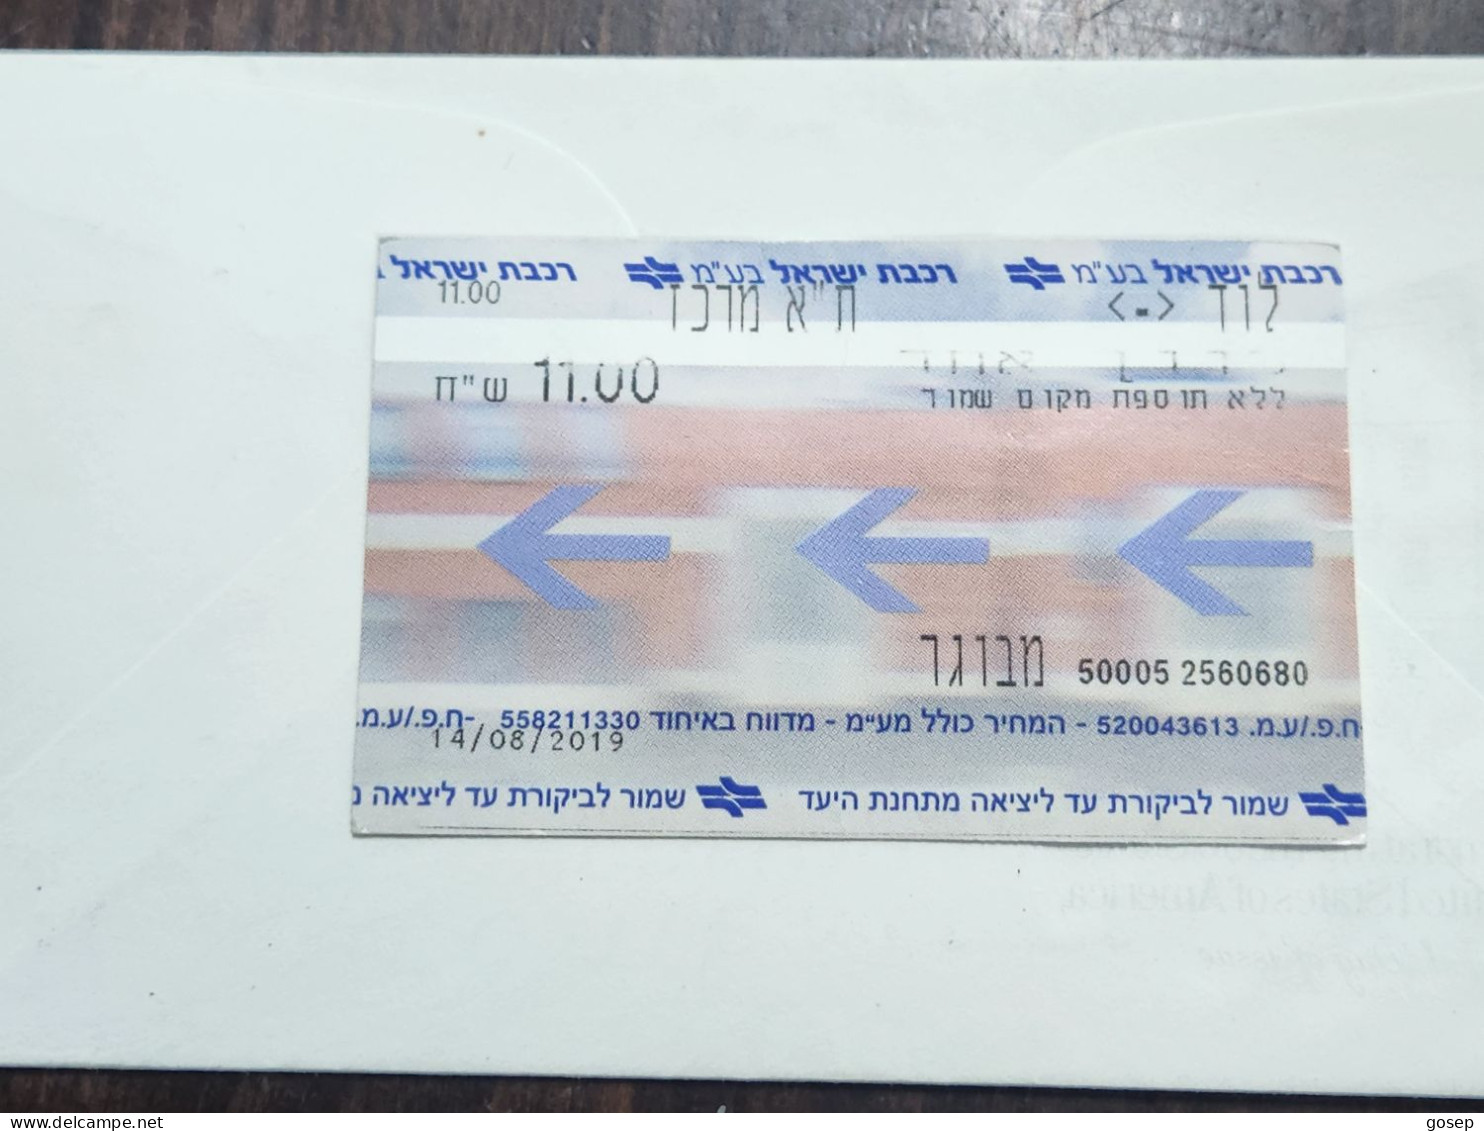 ISRAEL-Israel Railways Ltd-Tel-Aviv Center-Lod-Tel Aviv Center-(2560680)-adult-(23)-14.08.2019-(11.00₪)-good - Spoorweg